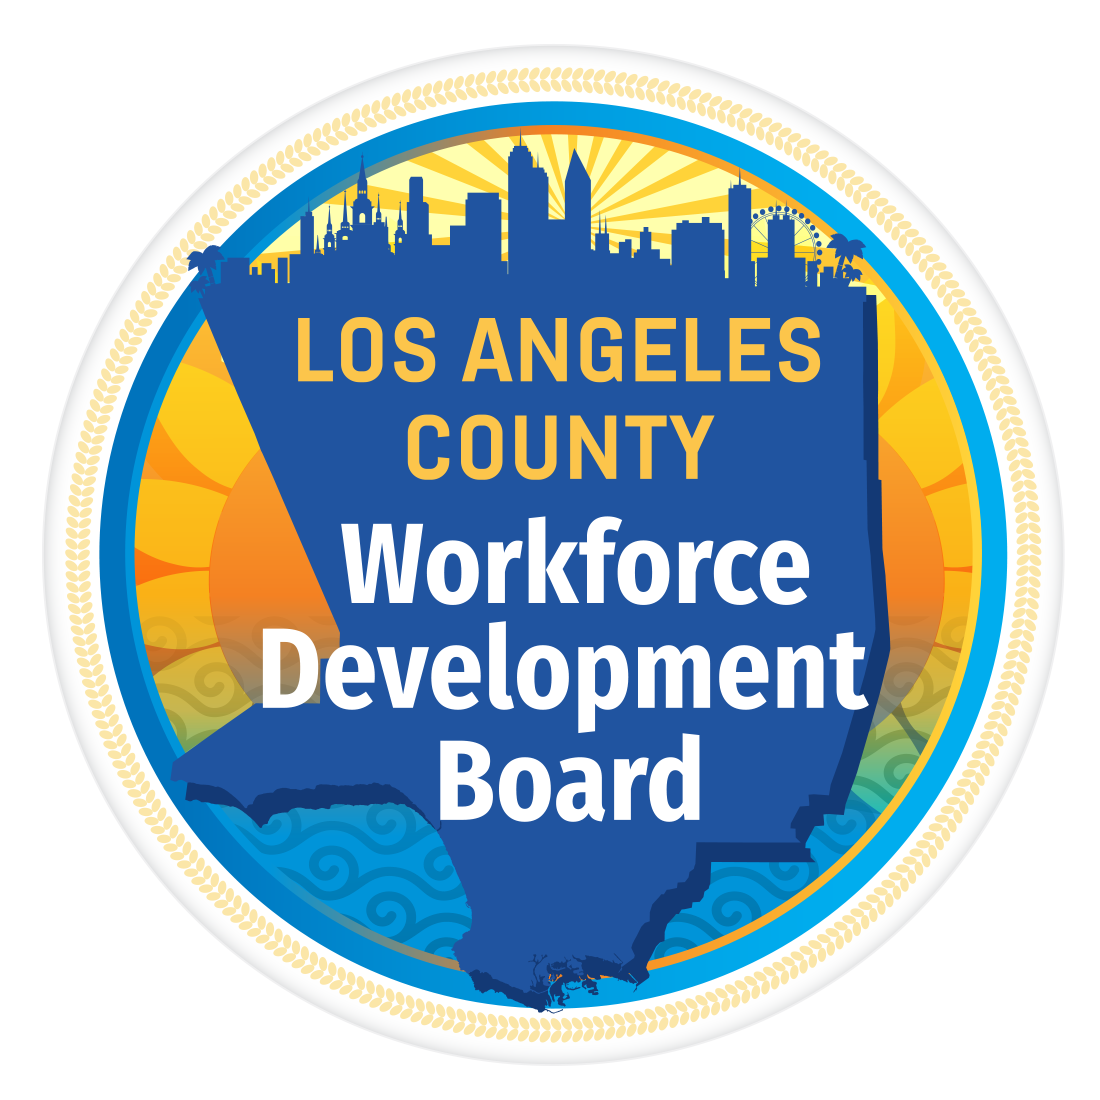 Los Angeles County Workforce Development Board